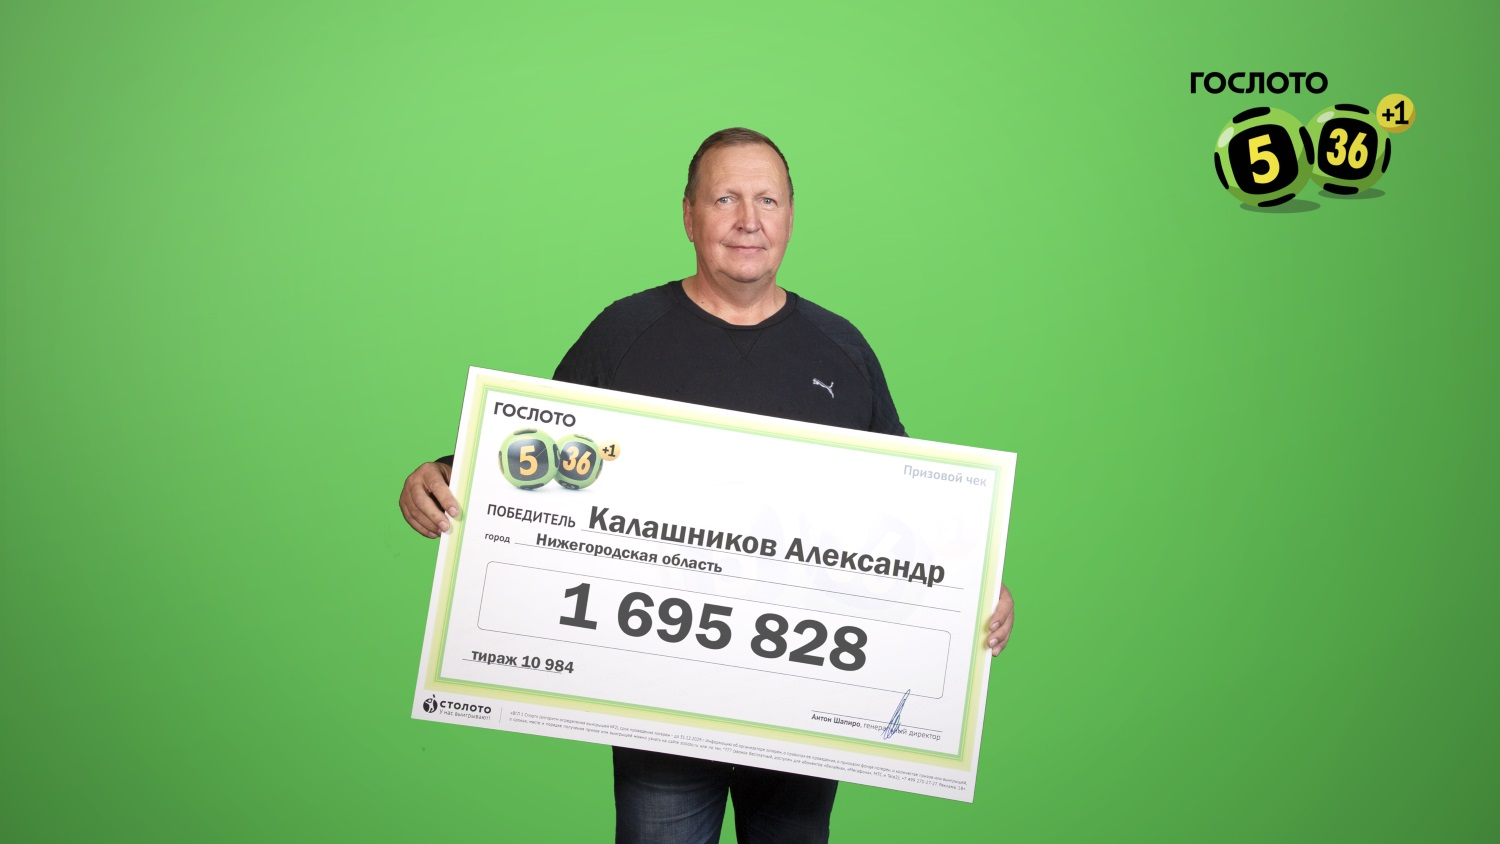 Плюнул на расчеты и доверился интуиции: нижегородец выиграл в лотерее более 1,6 миллиона рублей